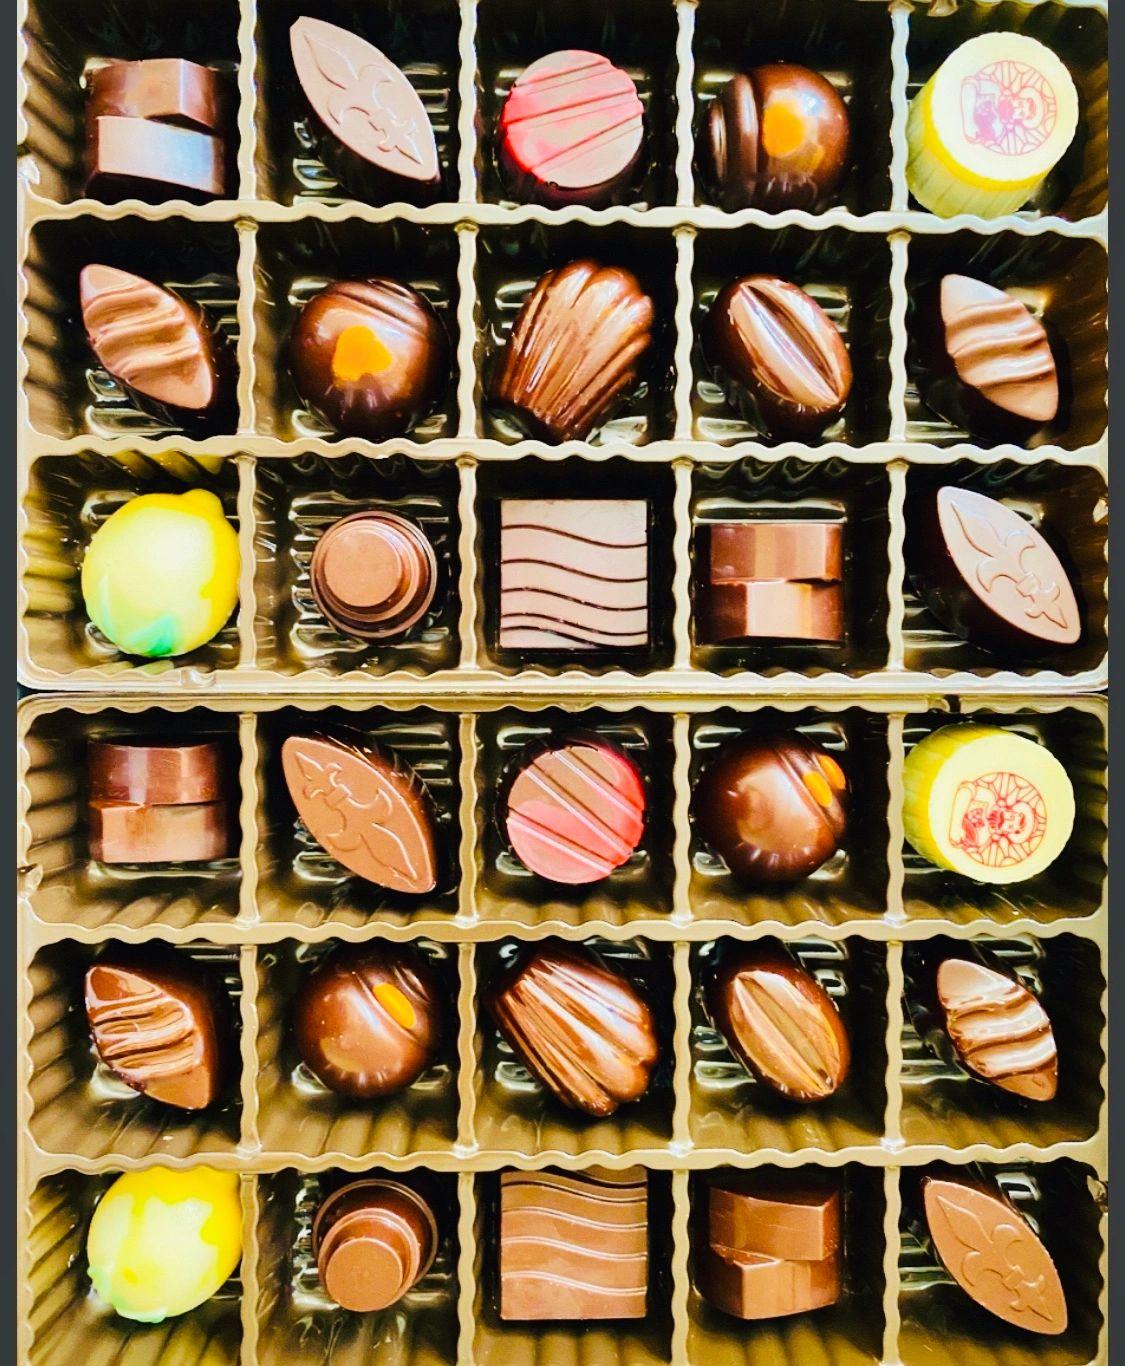 30 units Luxury Assorted Chocolates 11.28 Oz (320g)